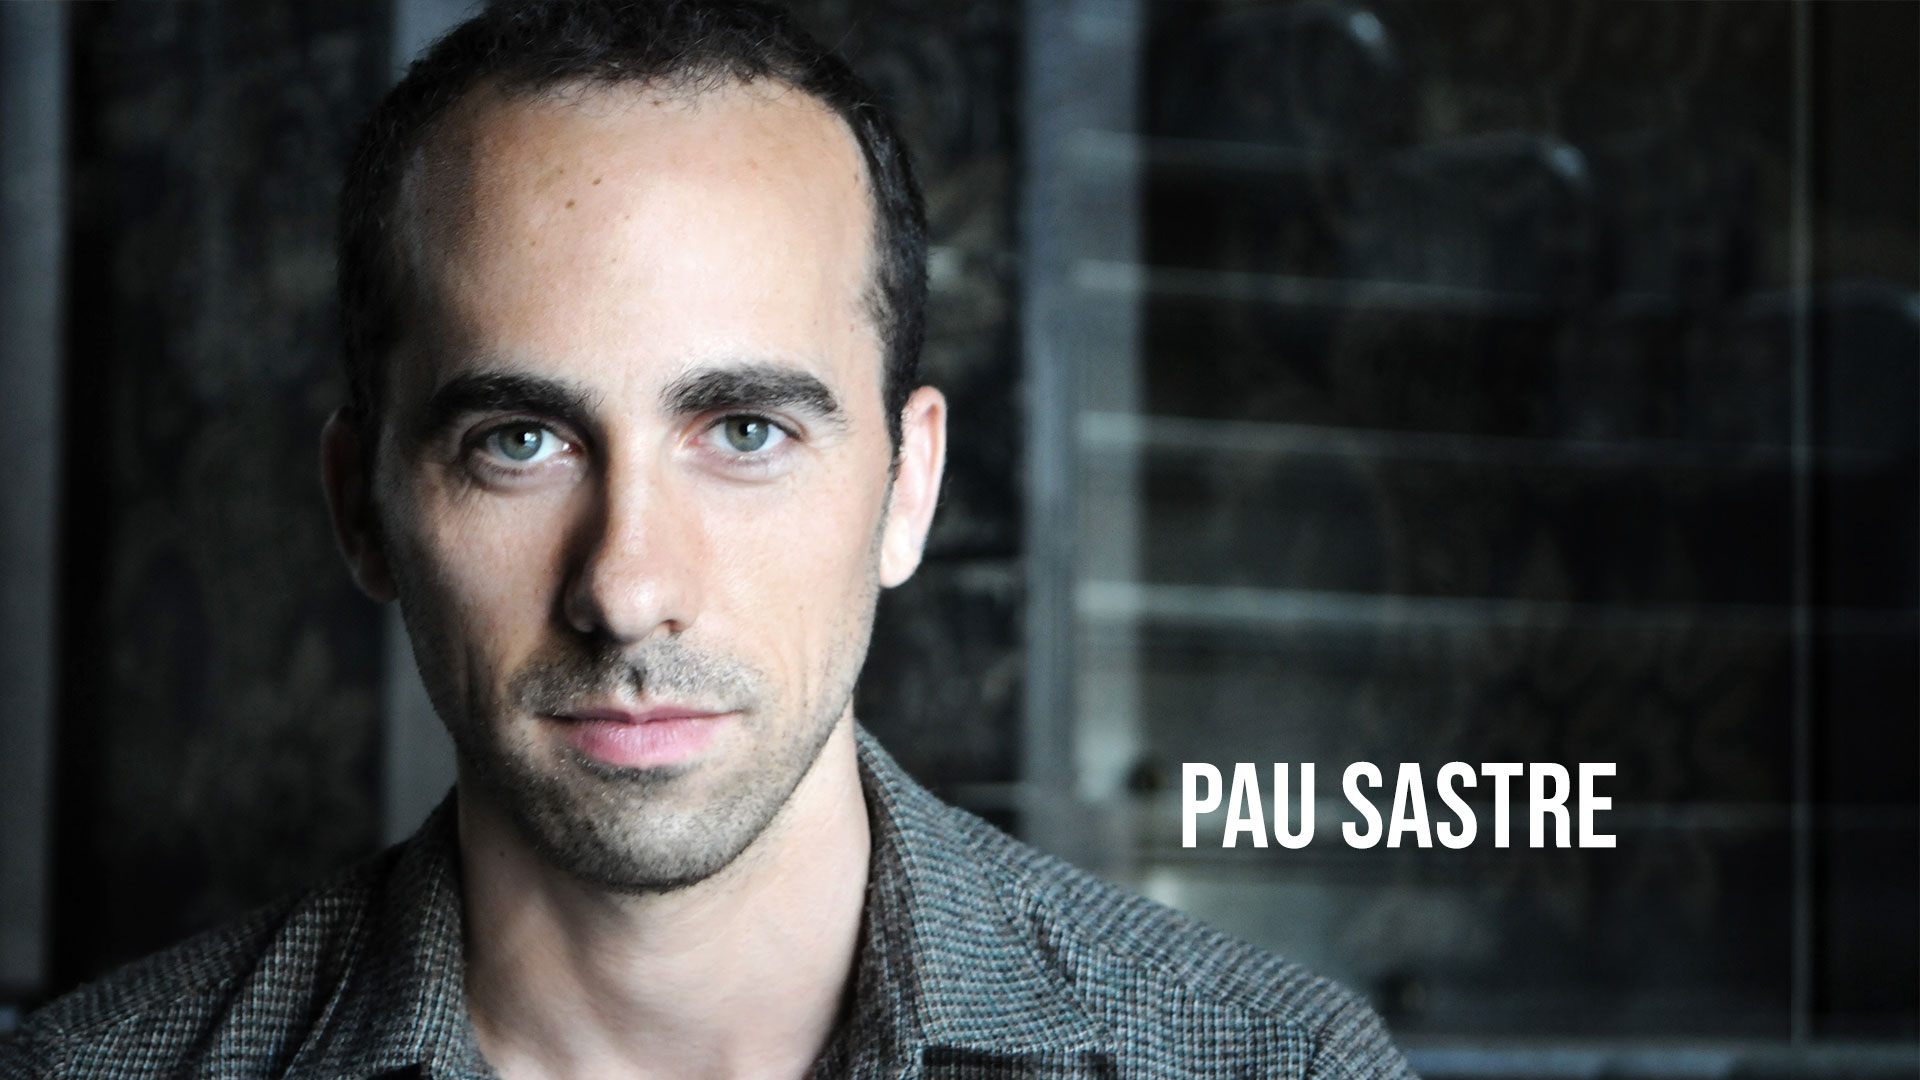 Pau Sastre - Actor